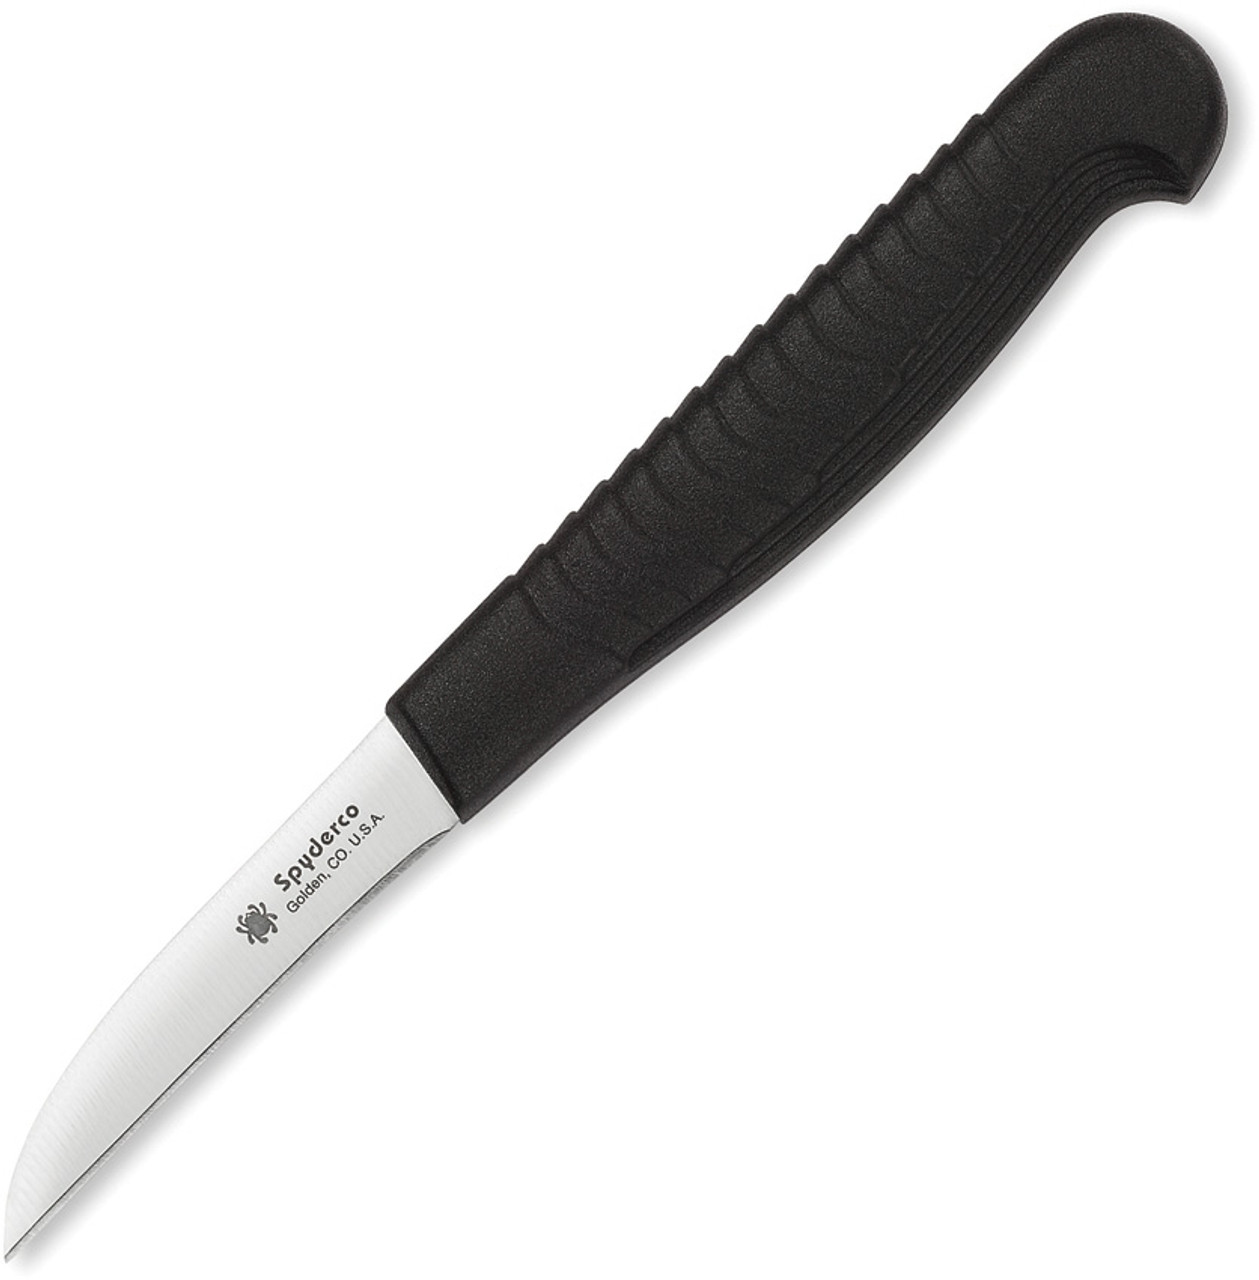 Spyderco Mini Paring Kitchen Knife Black Textured Polypropylene Handle  MBS26 Plain Edge K09PBK